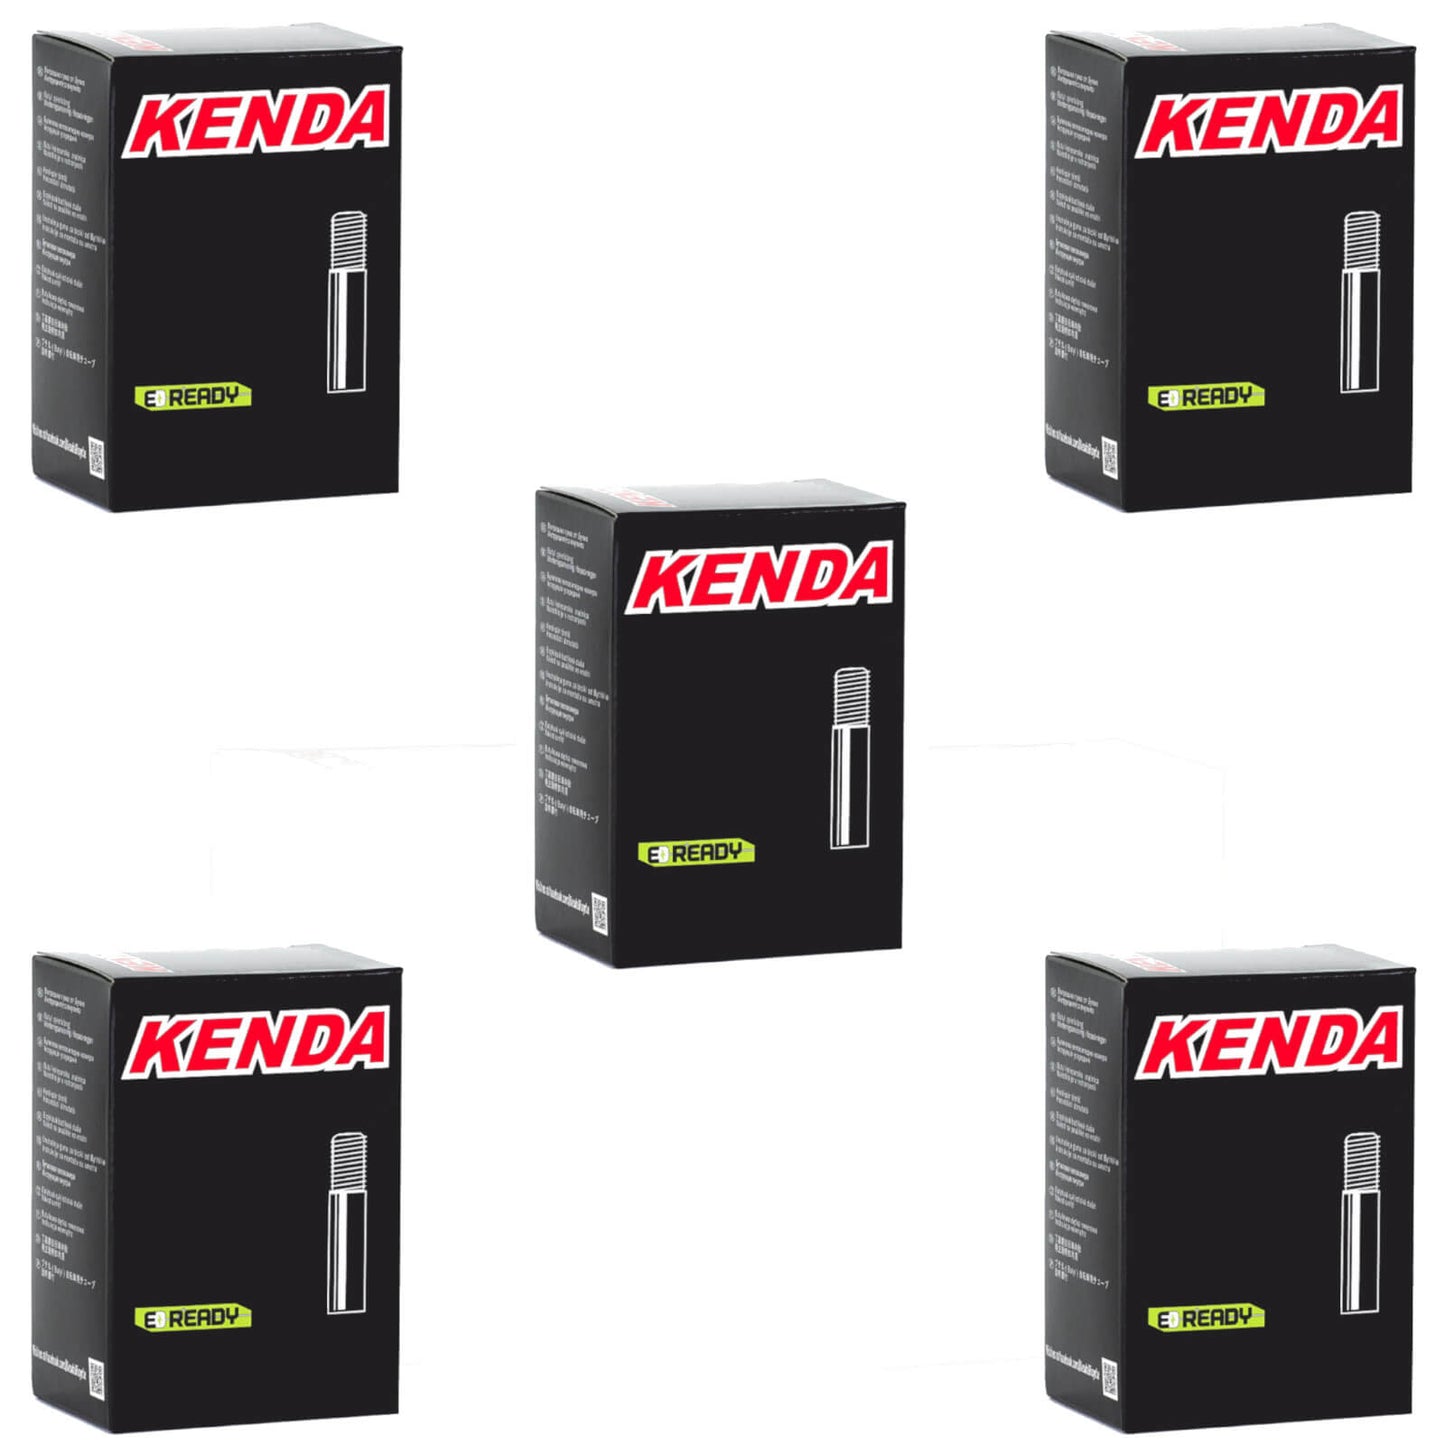 Kenda 29x2.0-2.4" 29 Inch Schrader Valve Bike Inner Tube Pack of 5